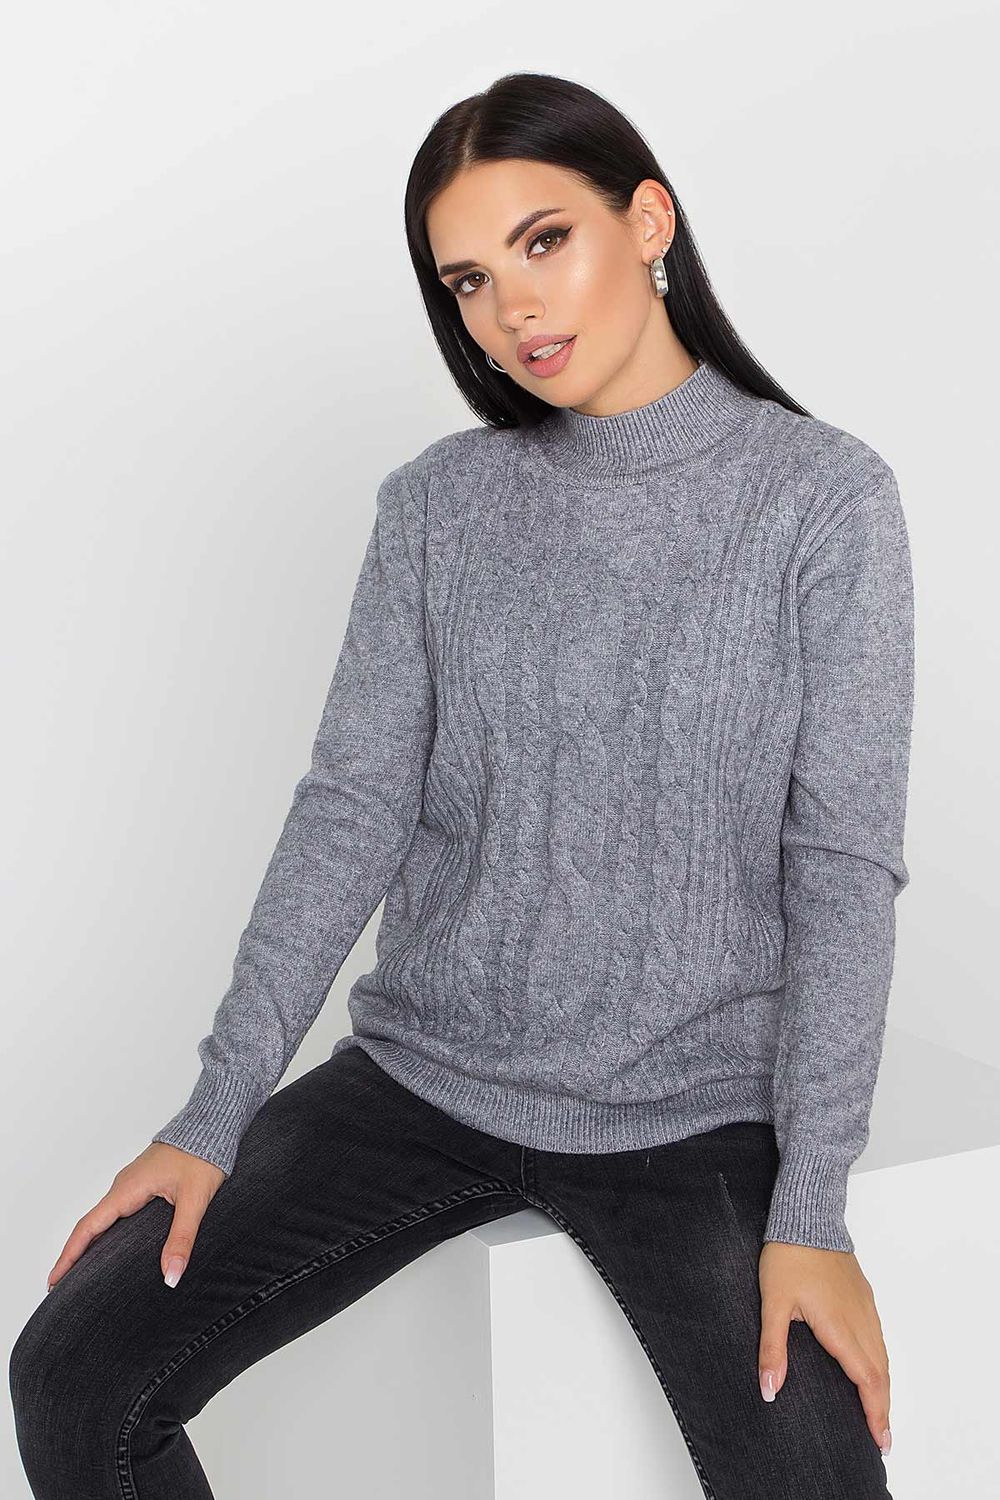 Женский вязаный свитер с узором косы серого цвета - фото